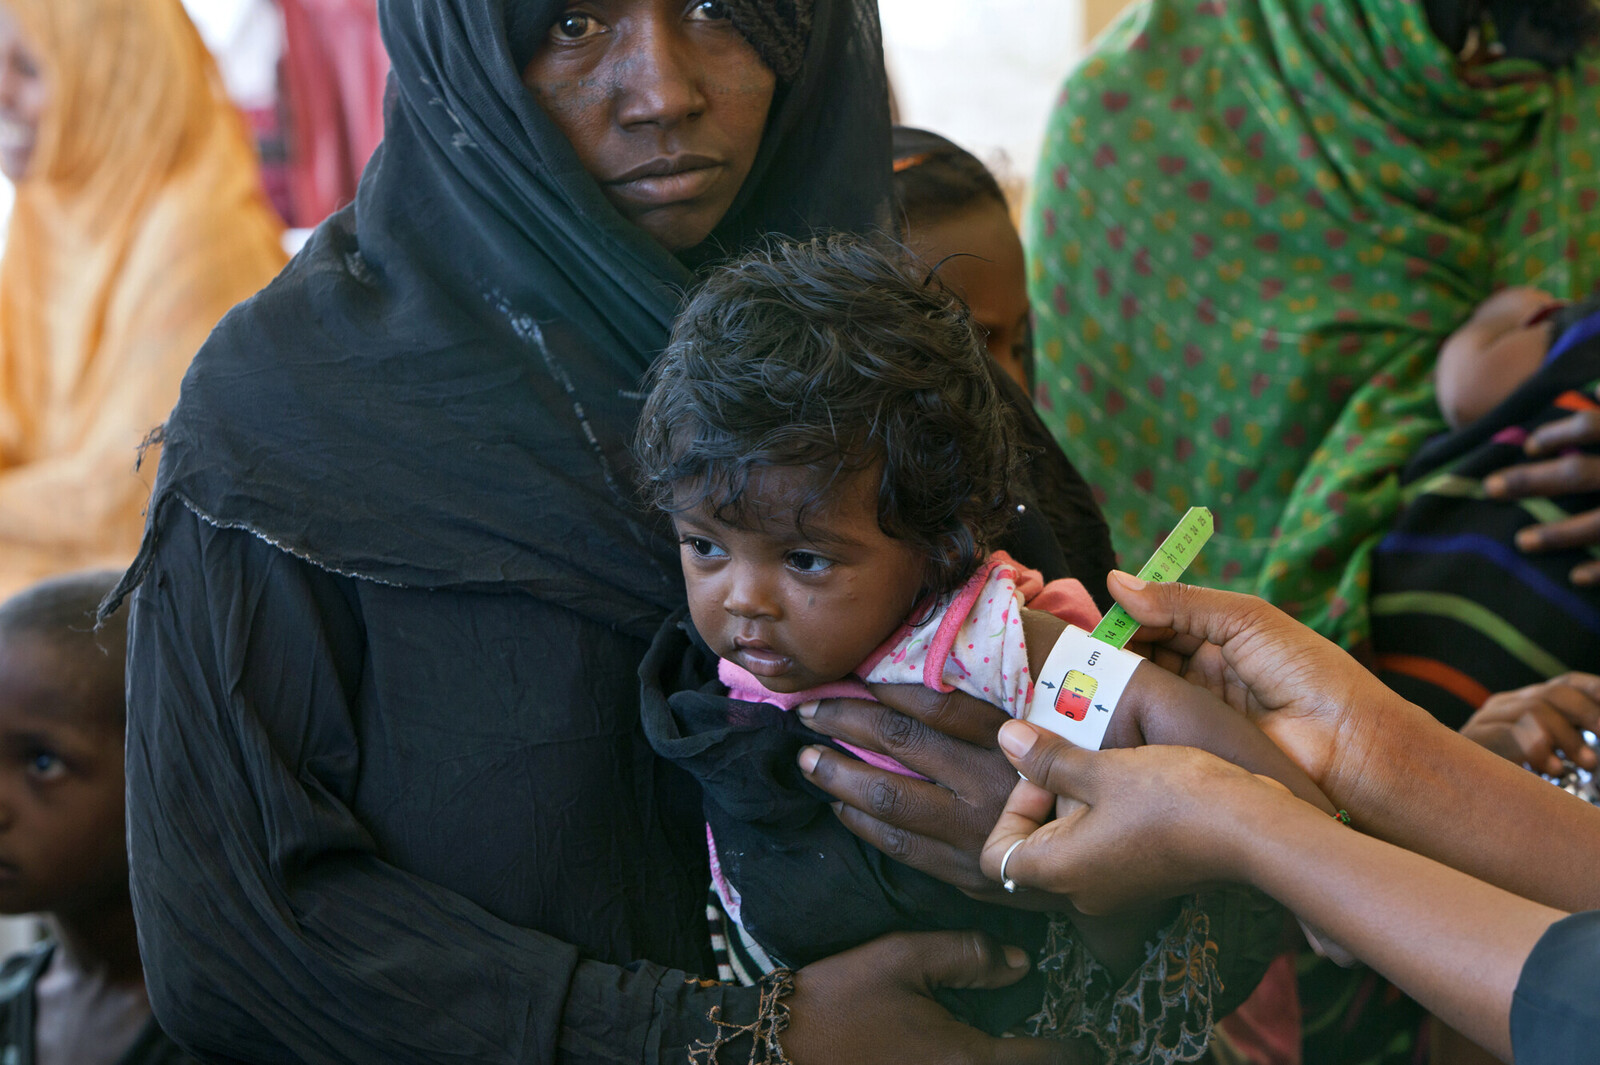 Einem kleinen Mädchen in Äthiopien wird mit dem Hungermaßband der Armumfang bemessen